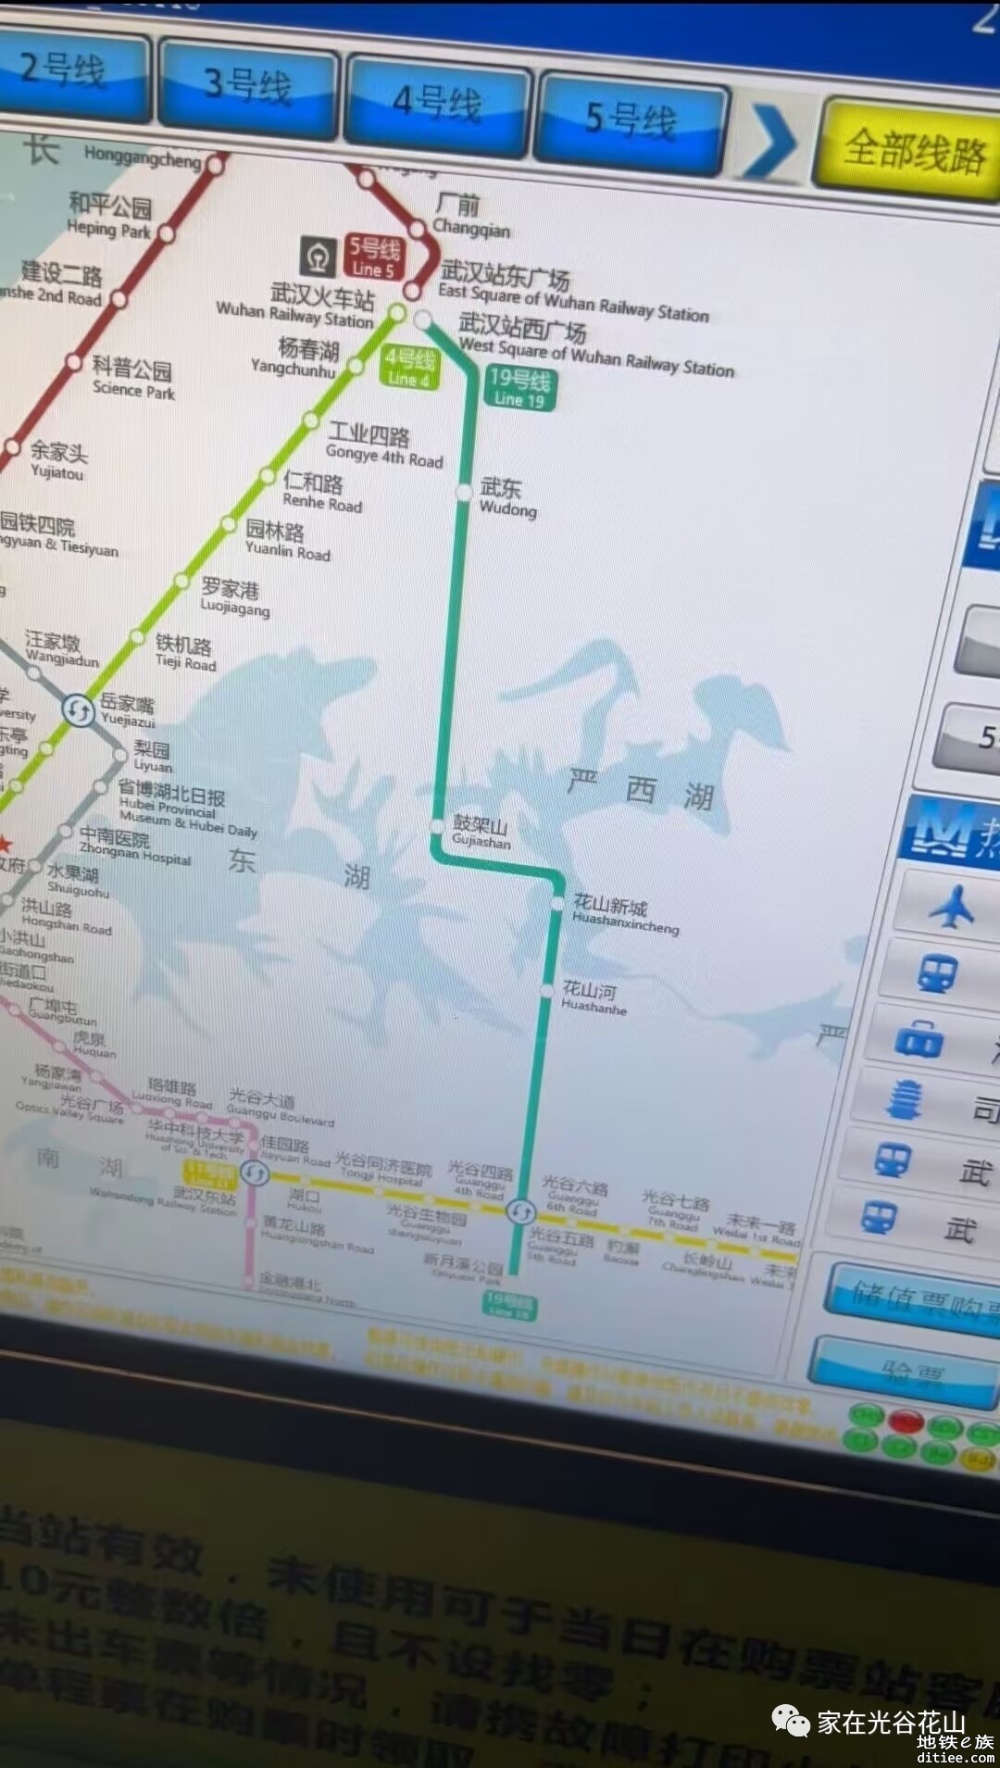 售票窗口已显示地铁19号线线路,武汉地铁线路图已更新